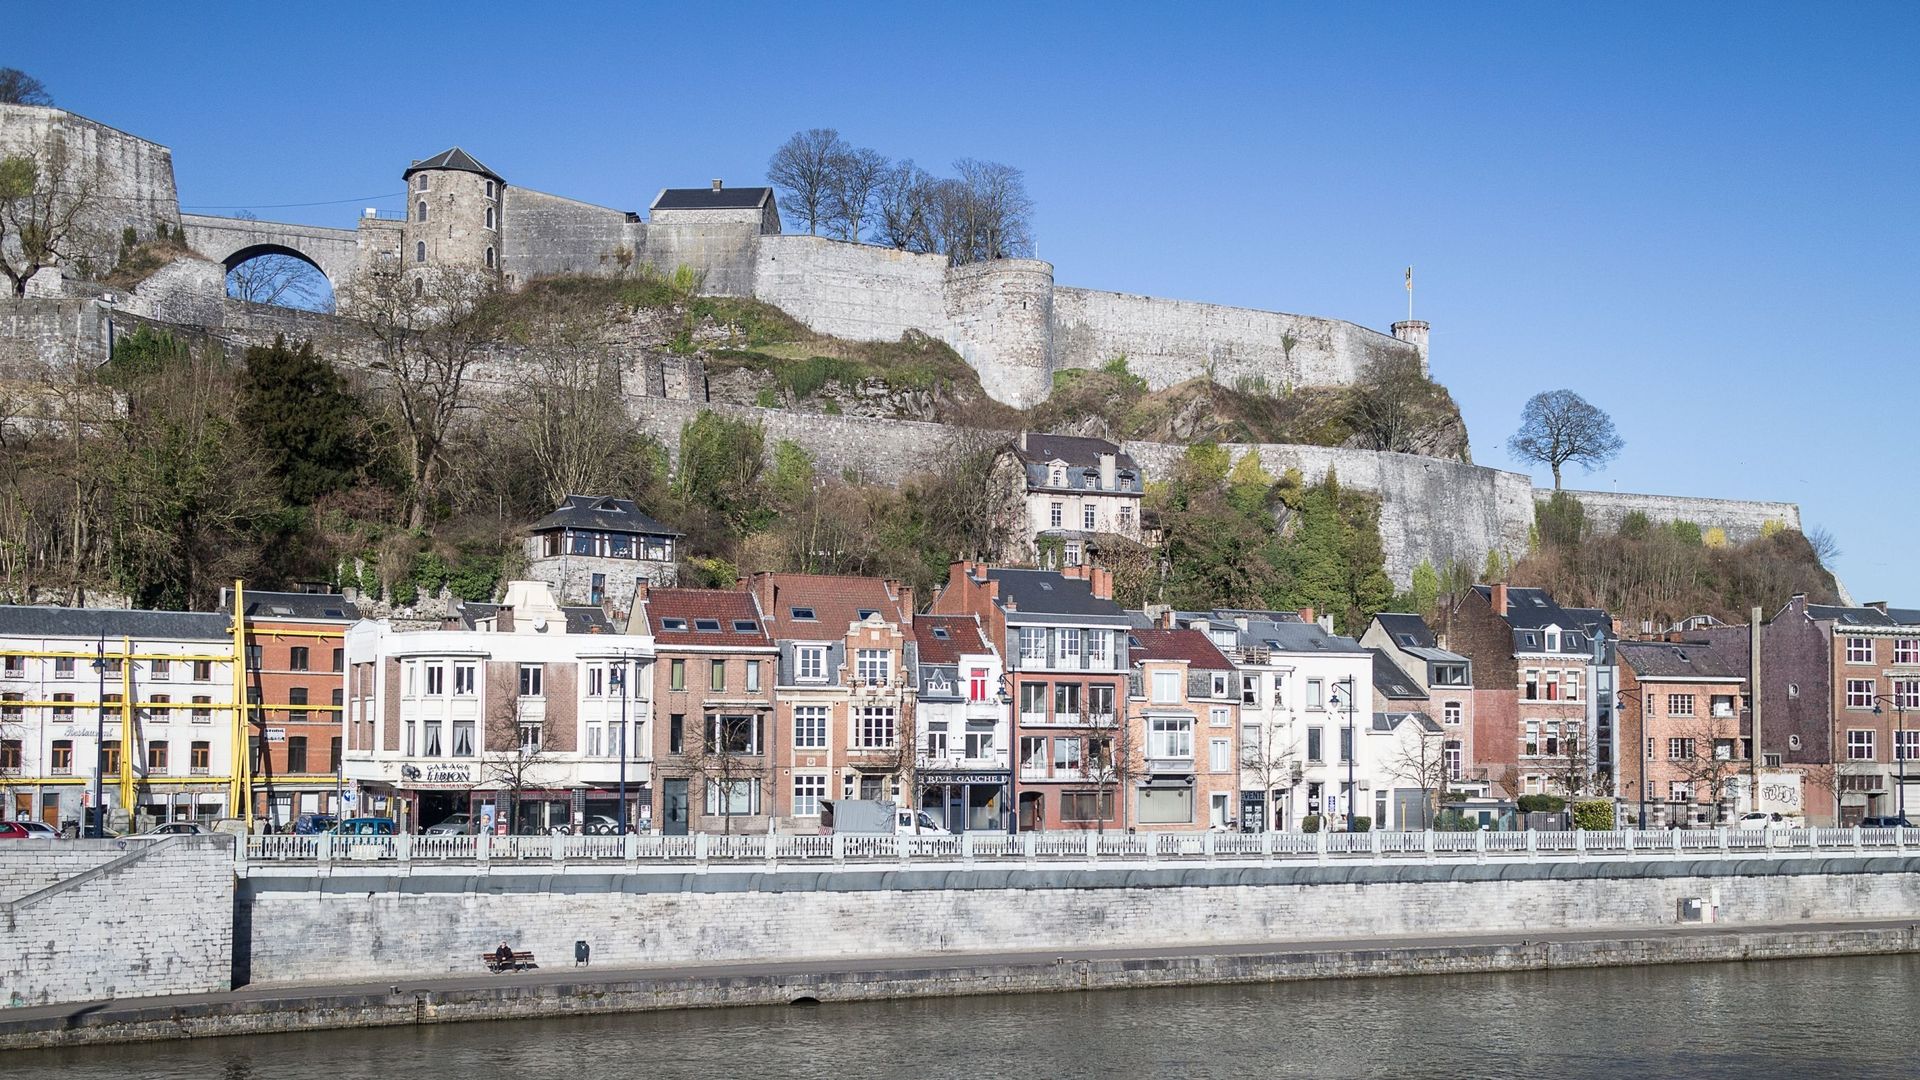 Des fresques urbaines pour rendre l'art accessible et colorer la ville de Namur